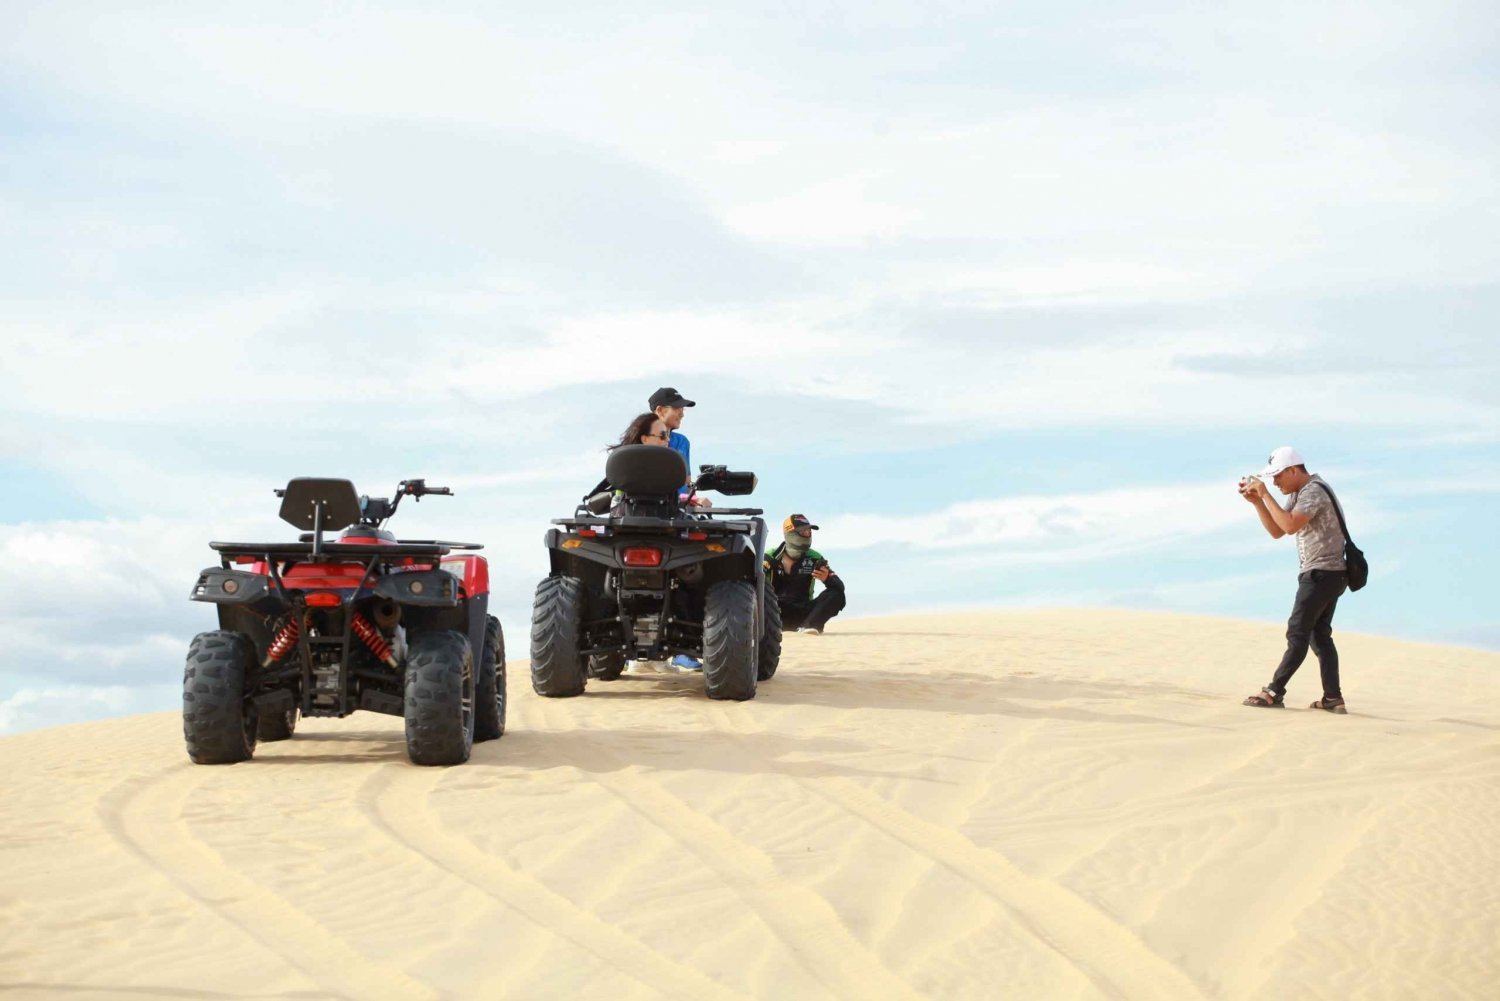 Nha Trang: Tanyoli Sand Dunes and Phan Rang Guided Day Trip